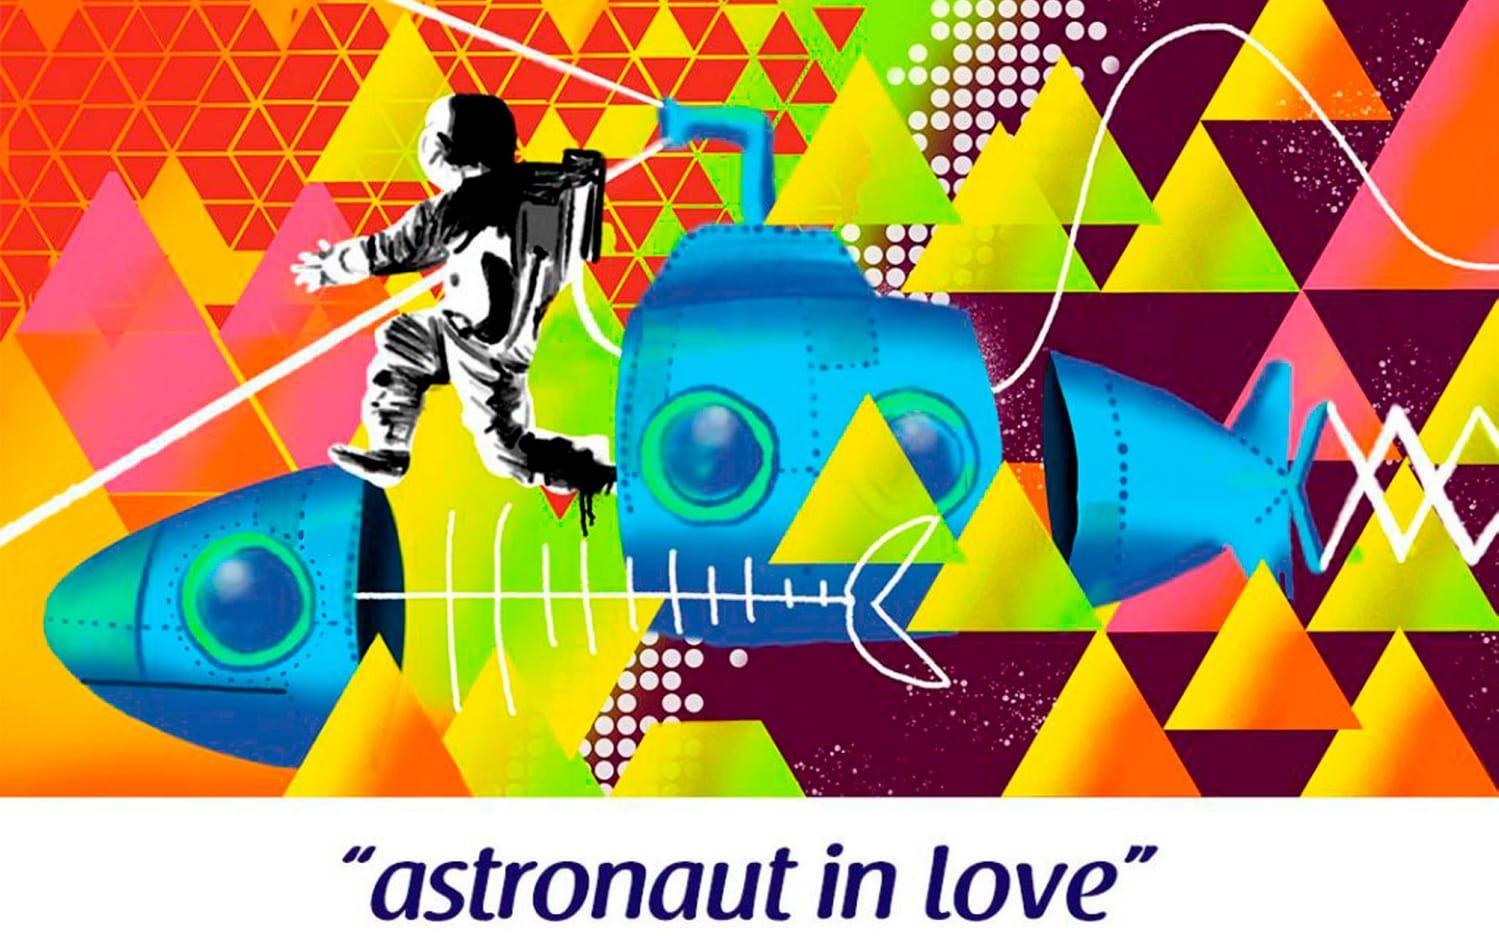 Astronaut in love av Rômulo Lass (Brasilien)